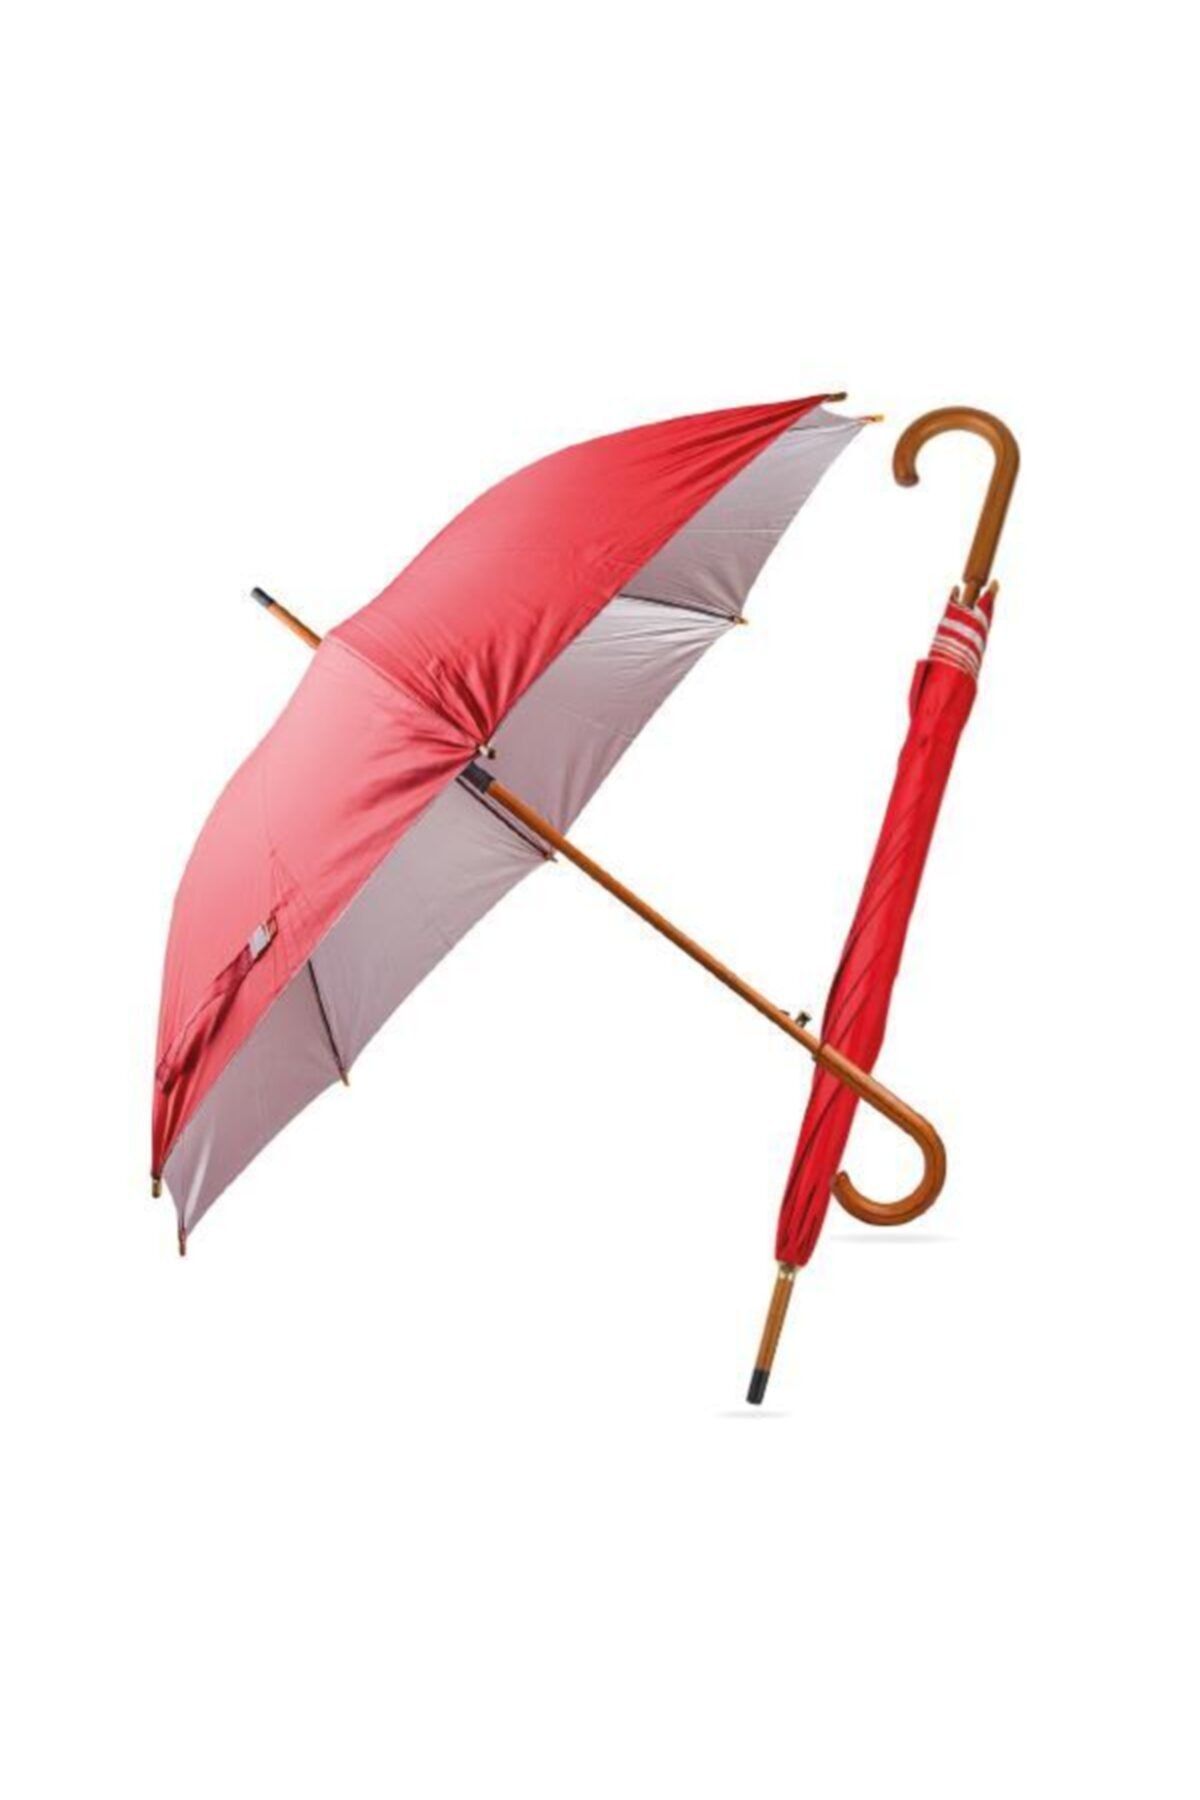 happysezon Ahşap Saplı Büyük Boy Kırmızı Baston Şemsiye